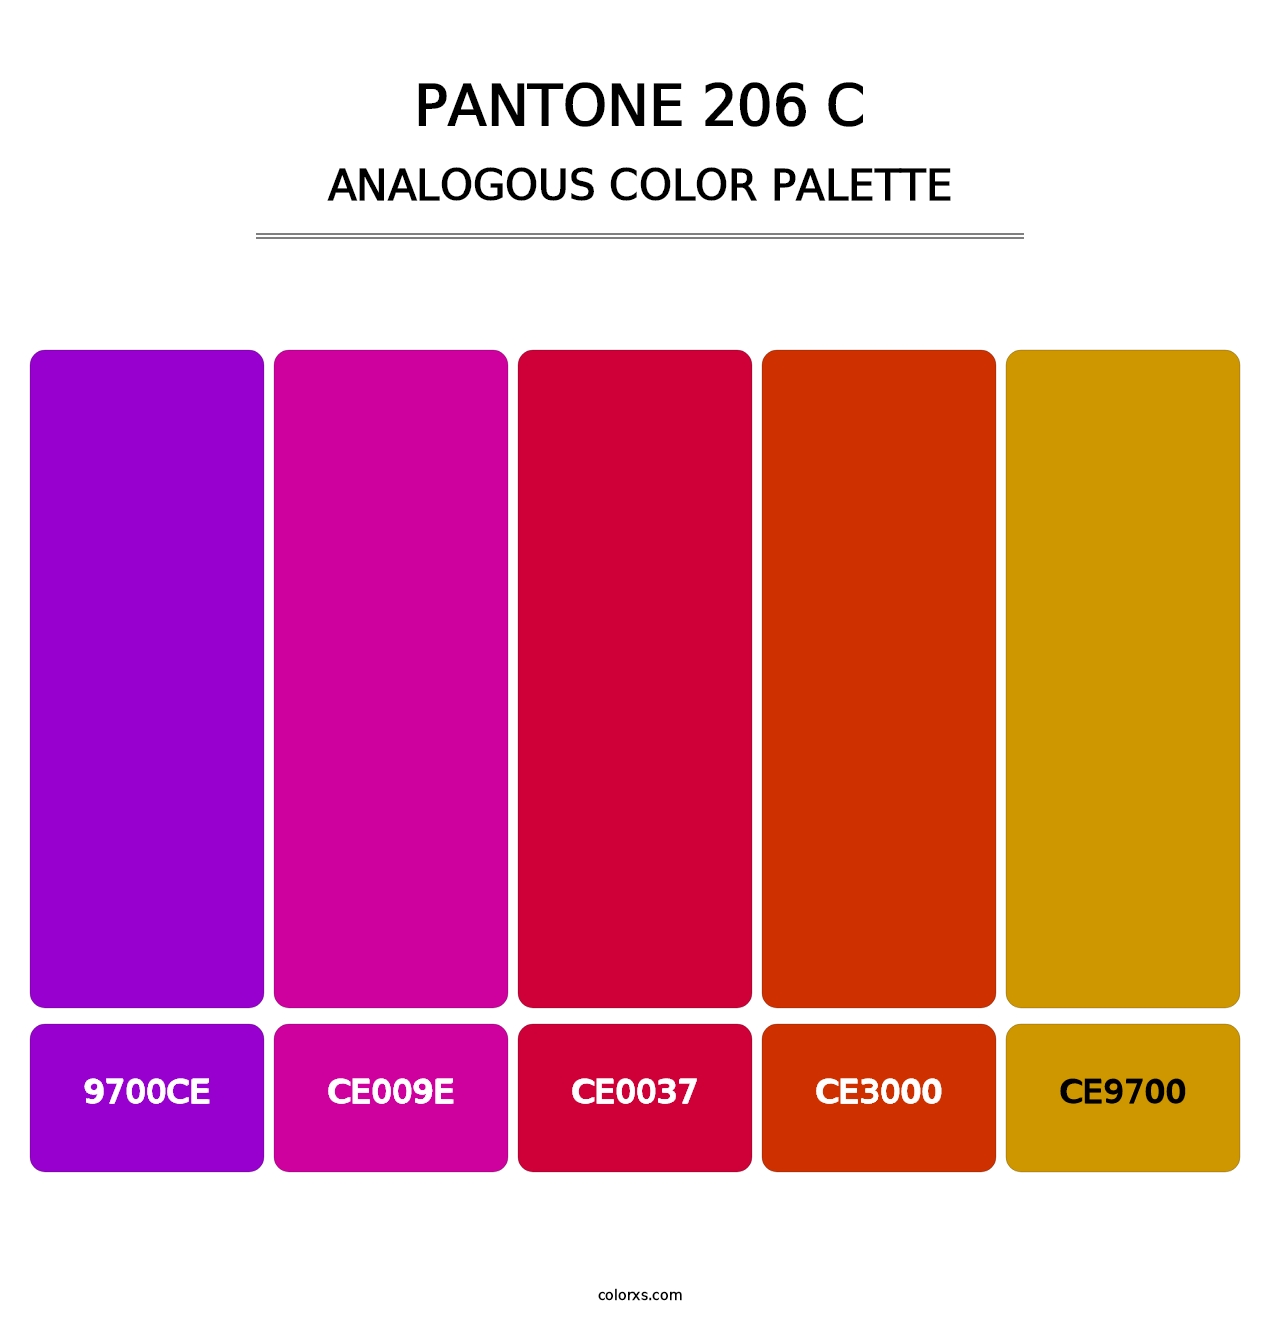 PANTONE 206 C - Analogous Color Palette